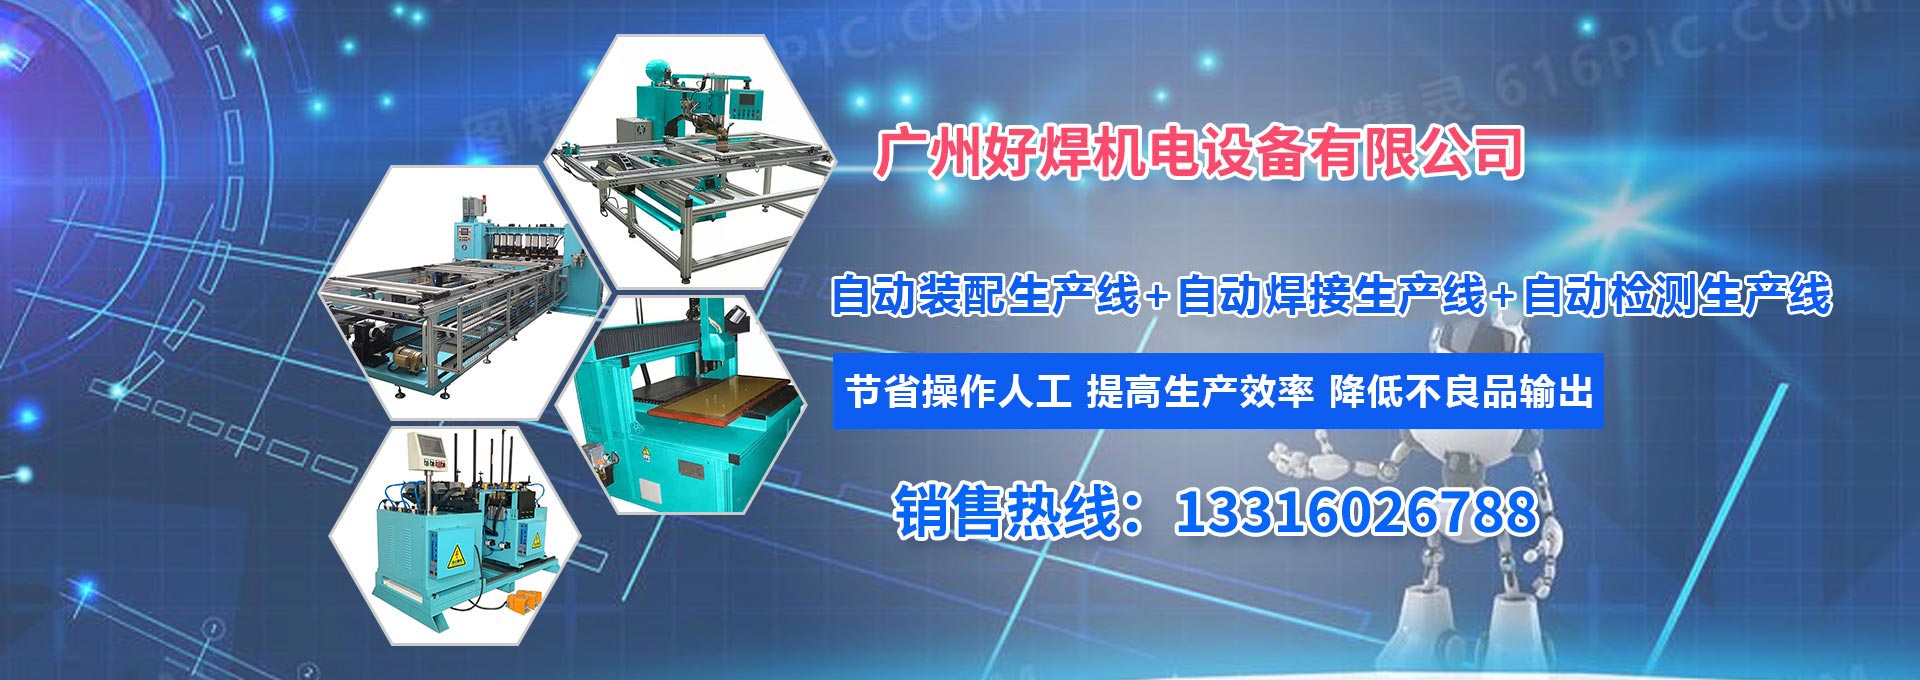 廣州好焊機電設備有限公司